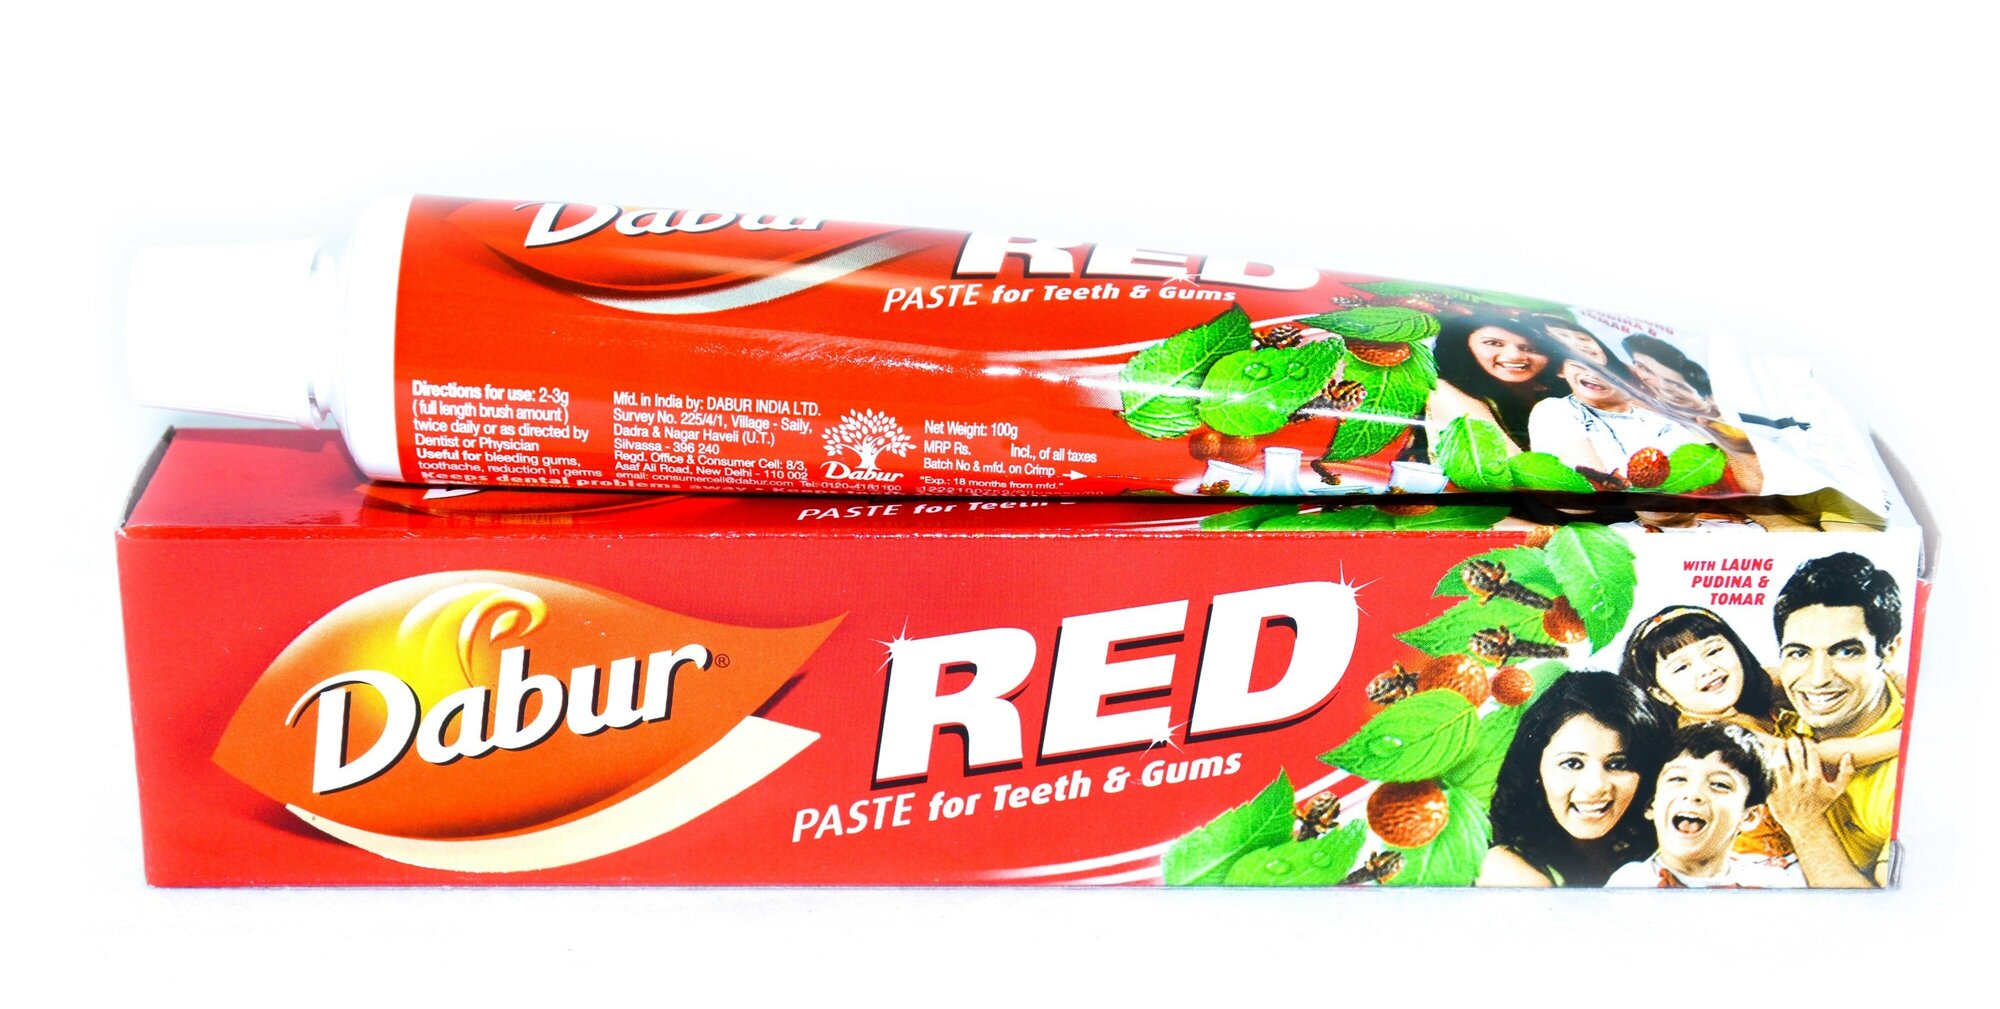 Dabur Зубная паста Red для комплексного ухода за полостью рта, 100гр.